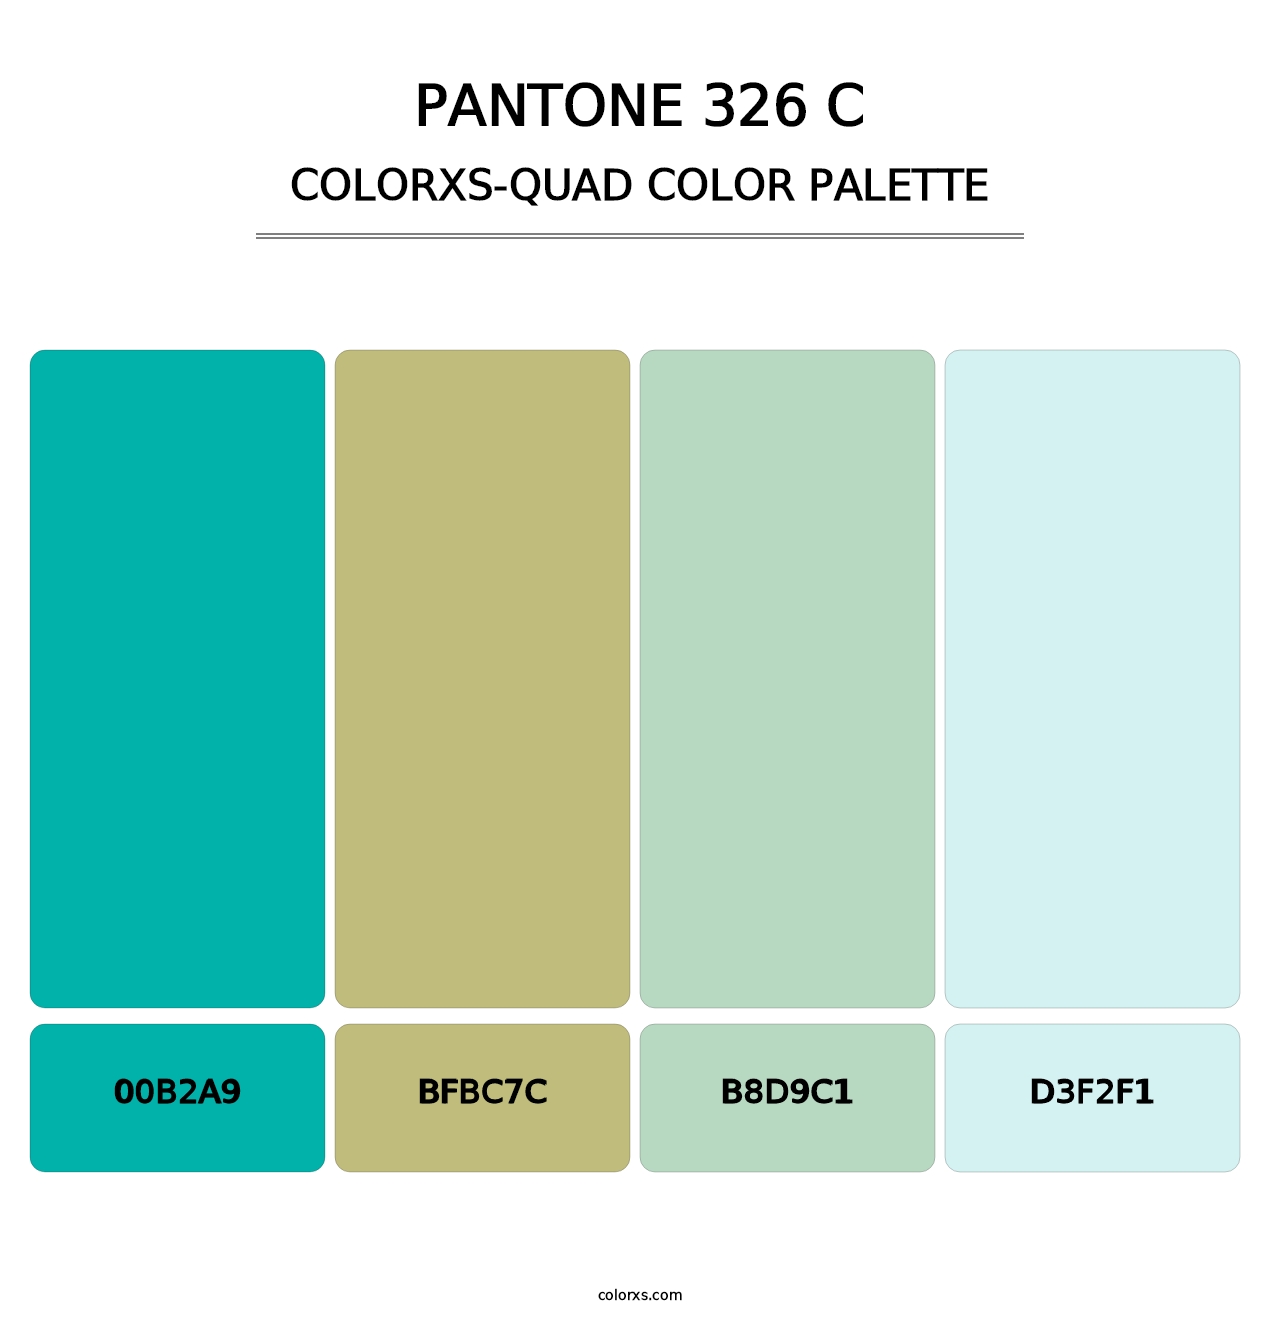 PANTONE 326 C - Colorxs Quad Palette